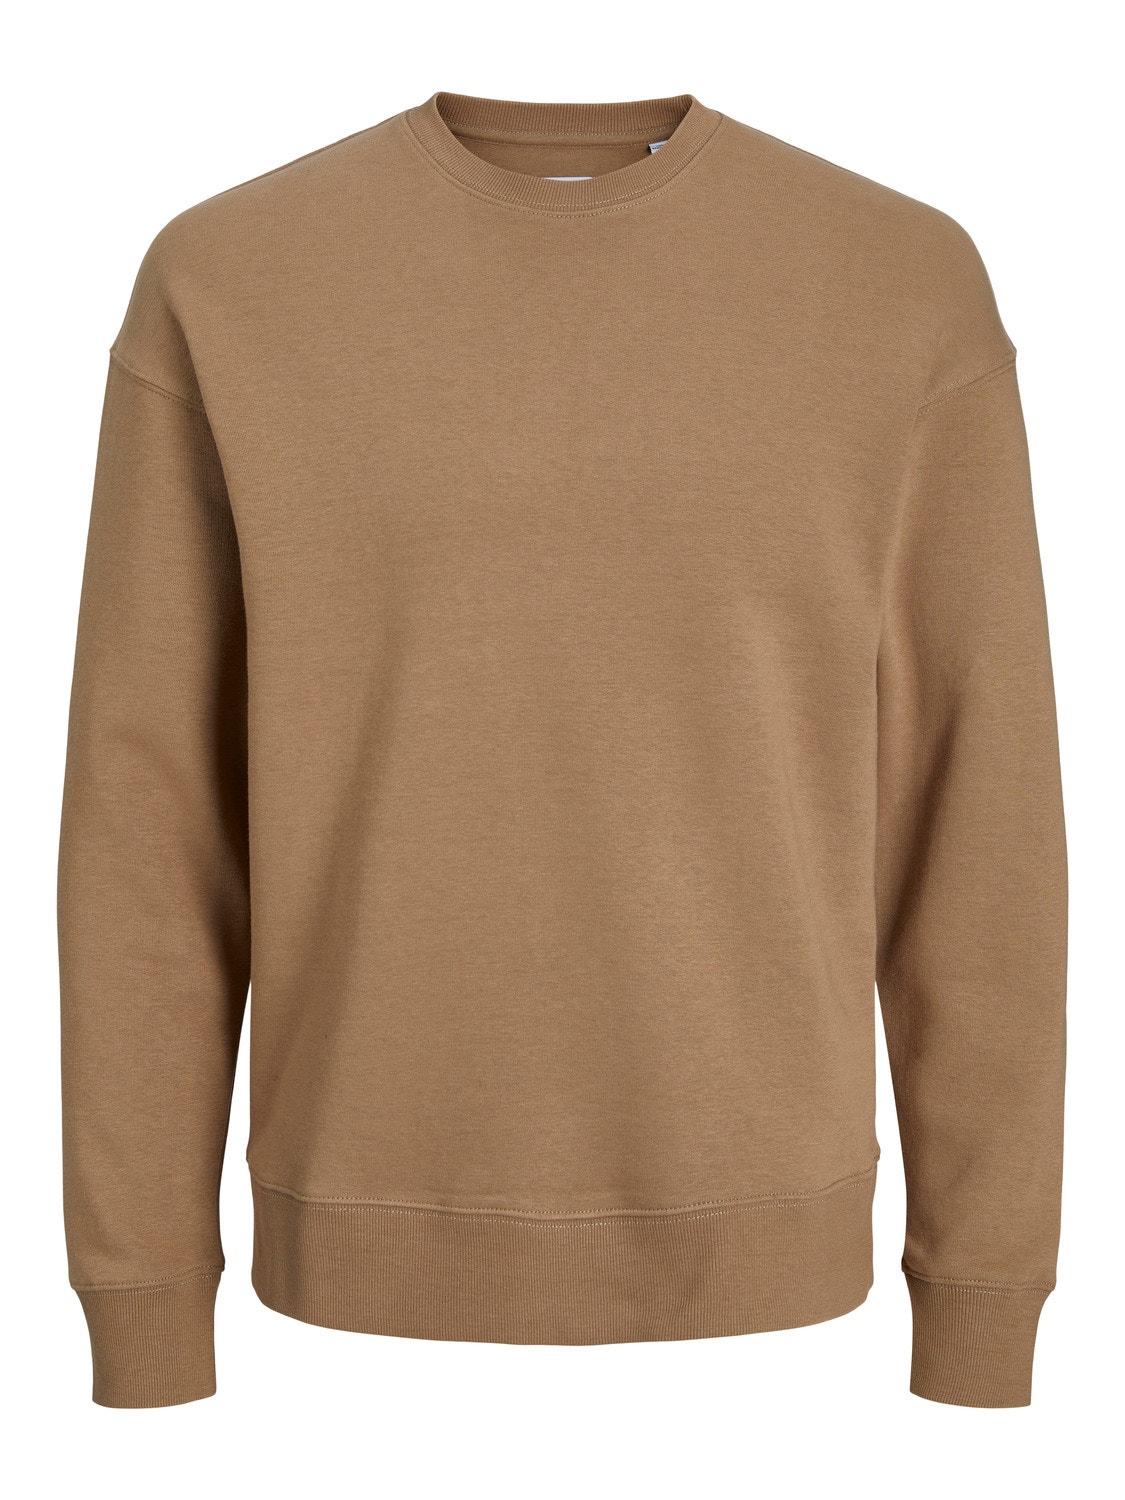 Jack & Jones Ensfarvet Sweatshirt med rund hals -Otter - 12208182